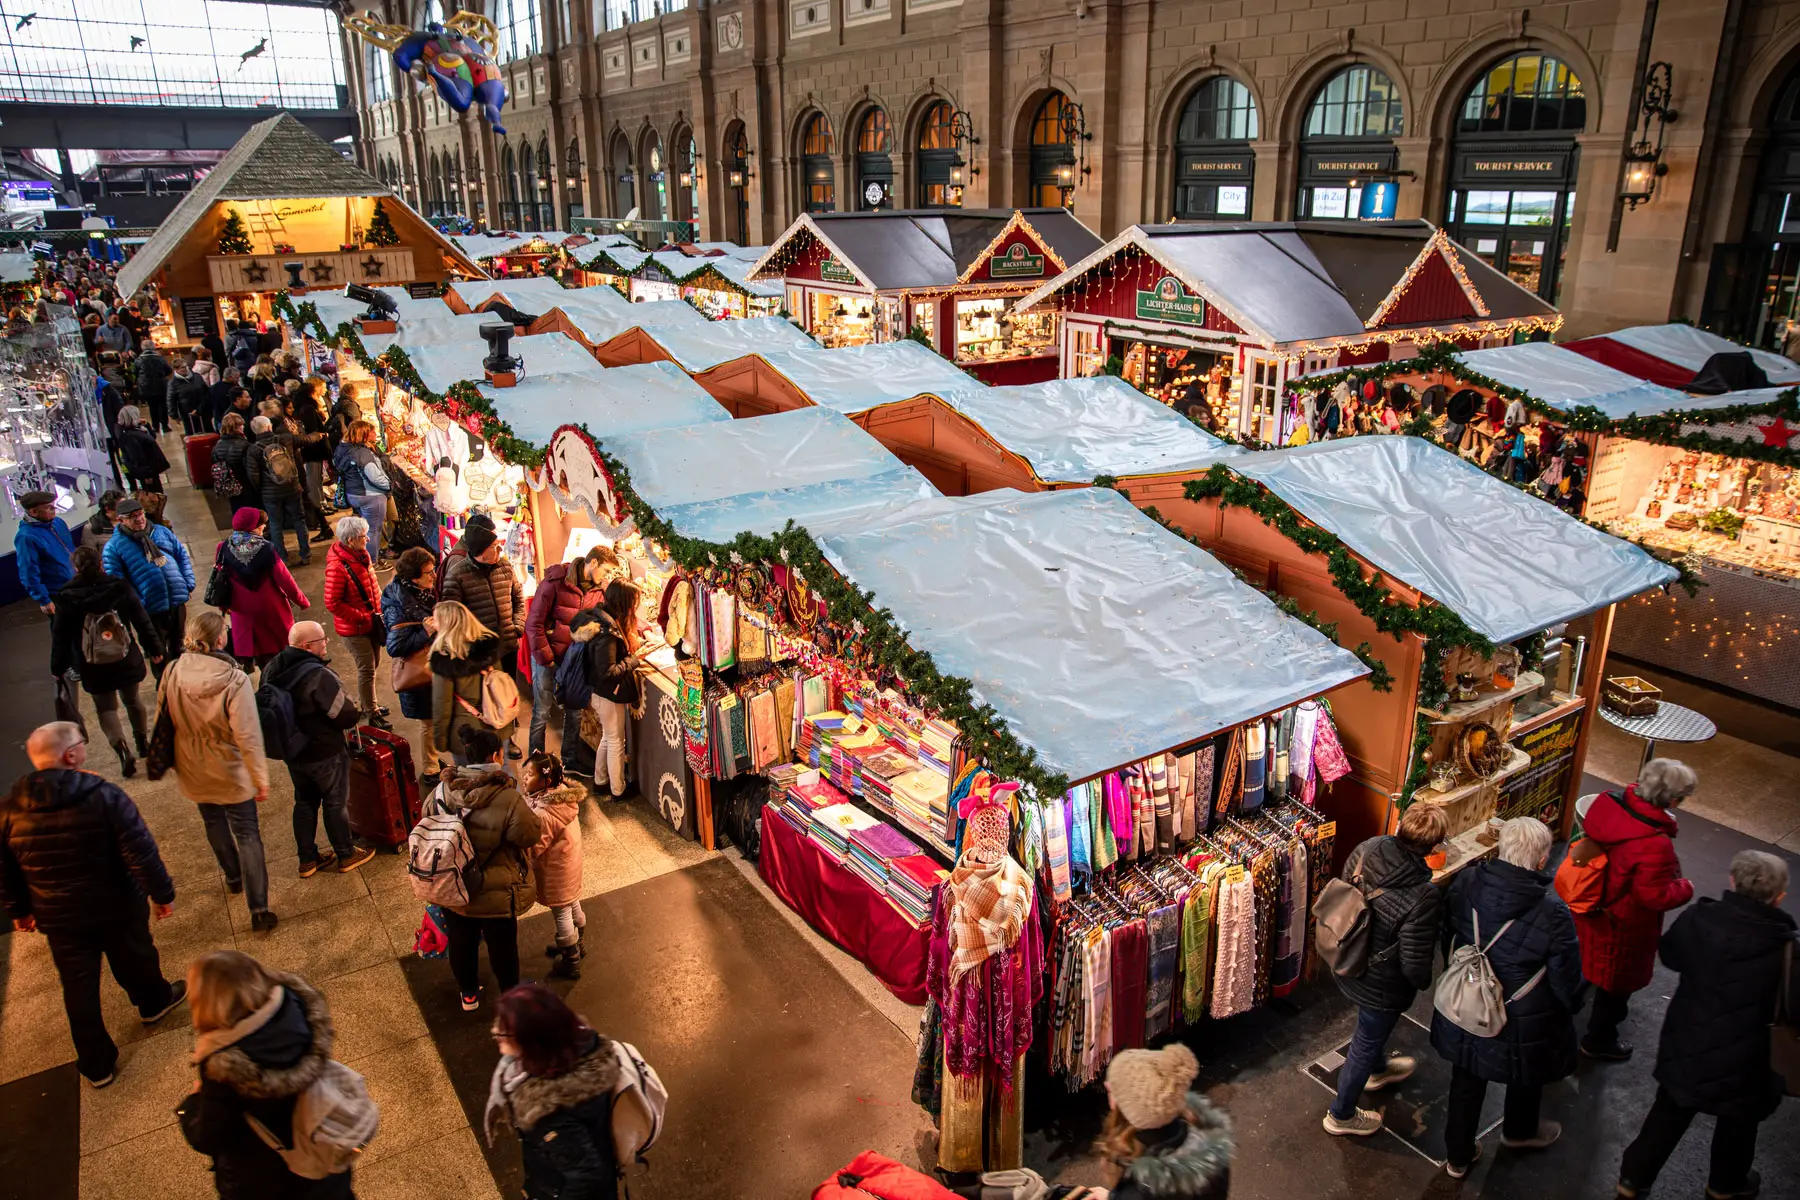 A Christmas market in Zurich